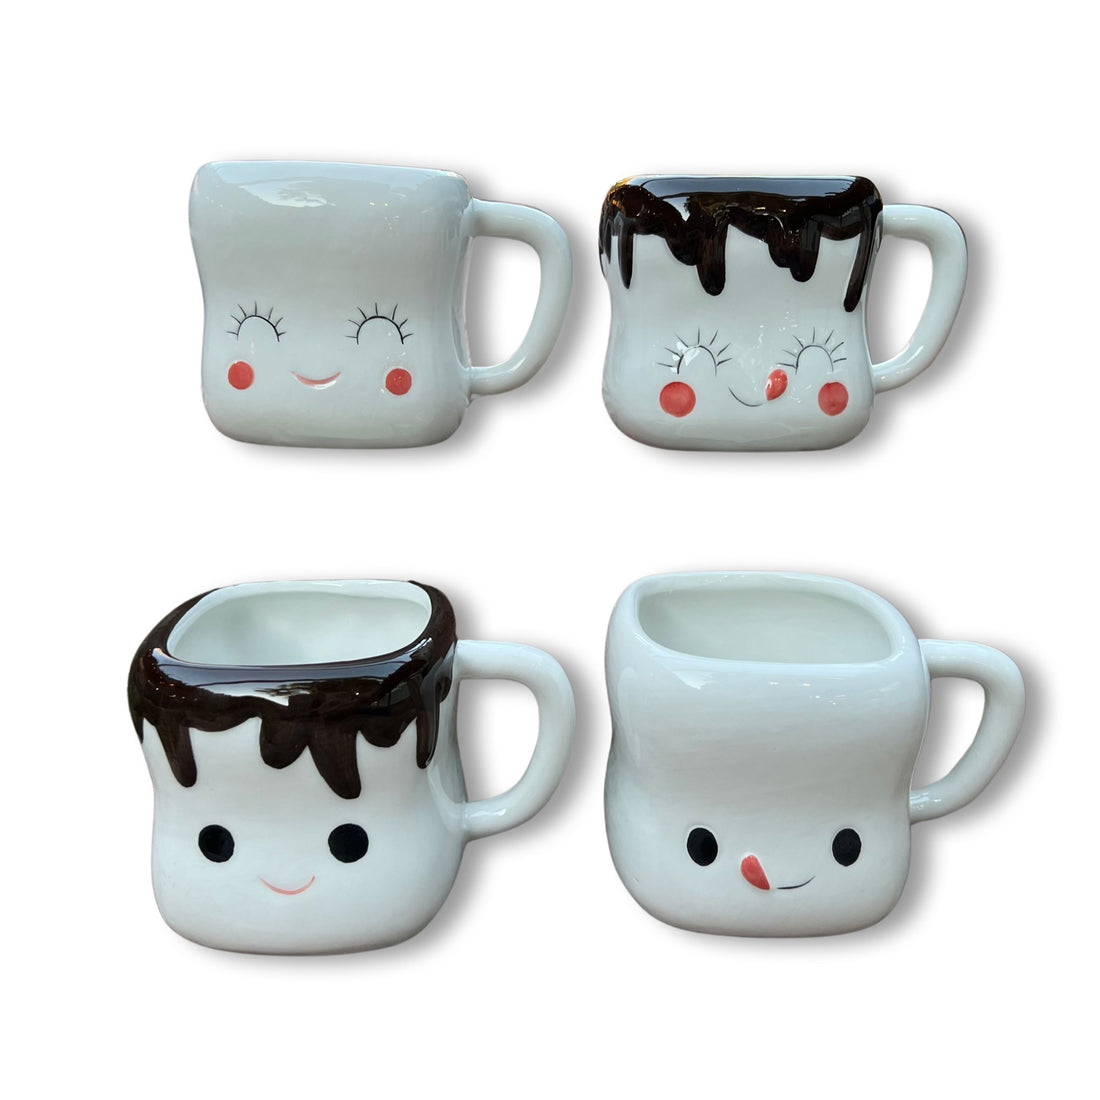 Cute Marshmallow Mugs For Tea and Cocoa - Loose Leaf Tea Market